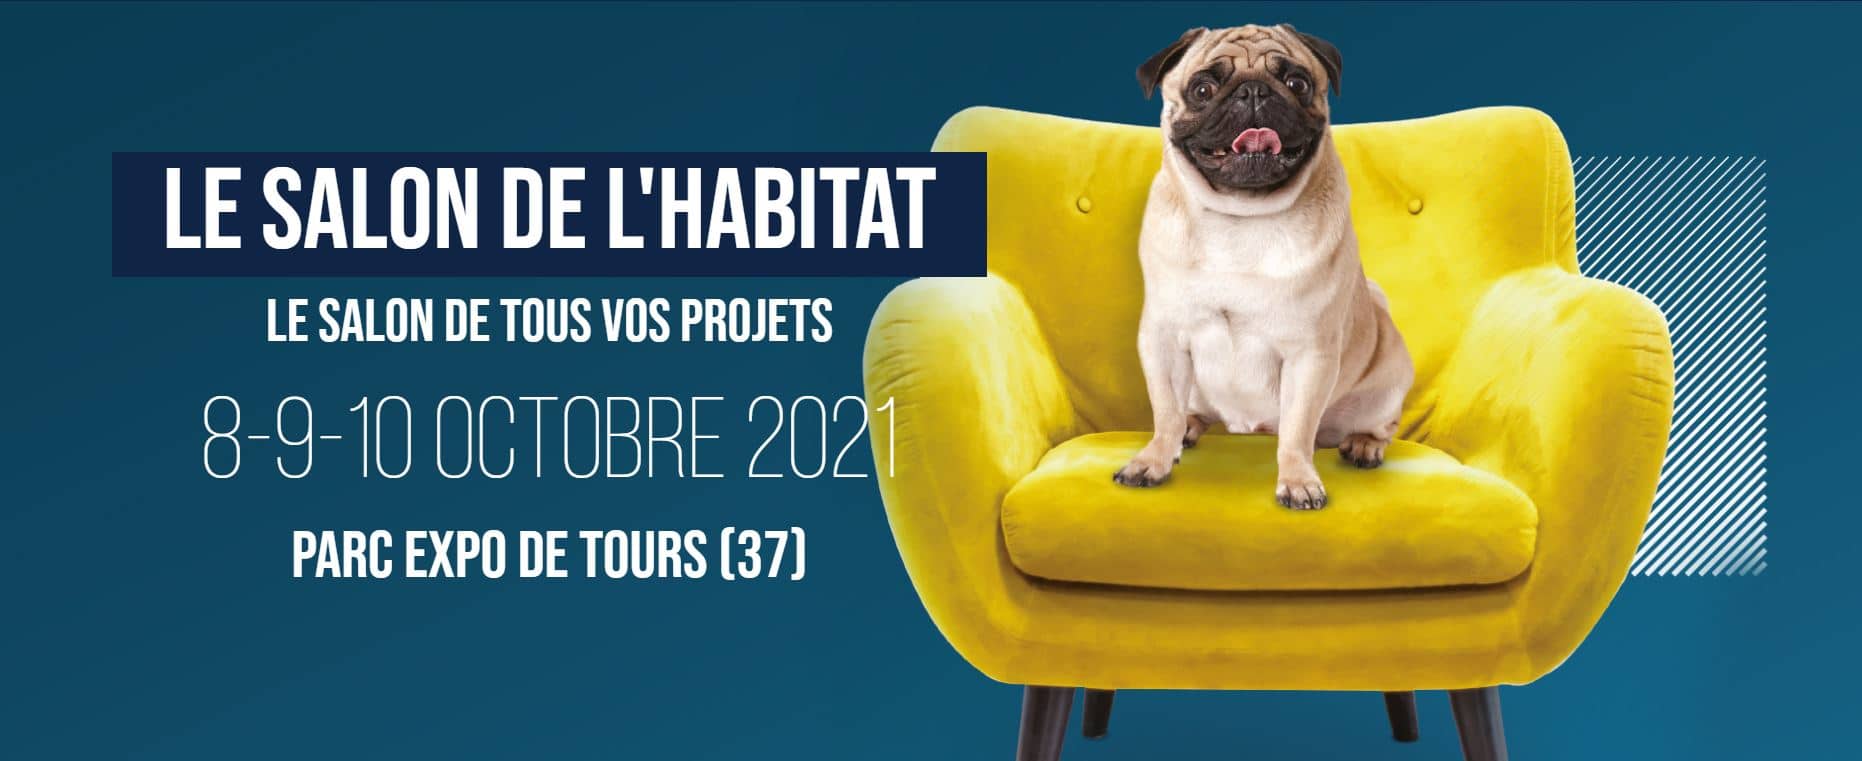 Salon de l’habitat de Tours 2021.